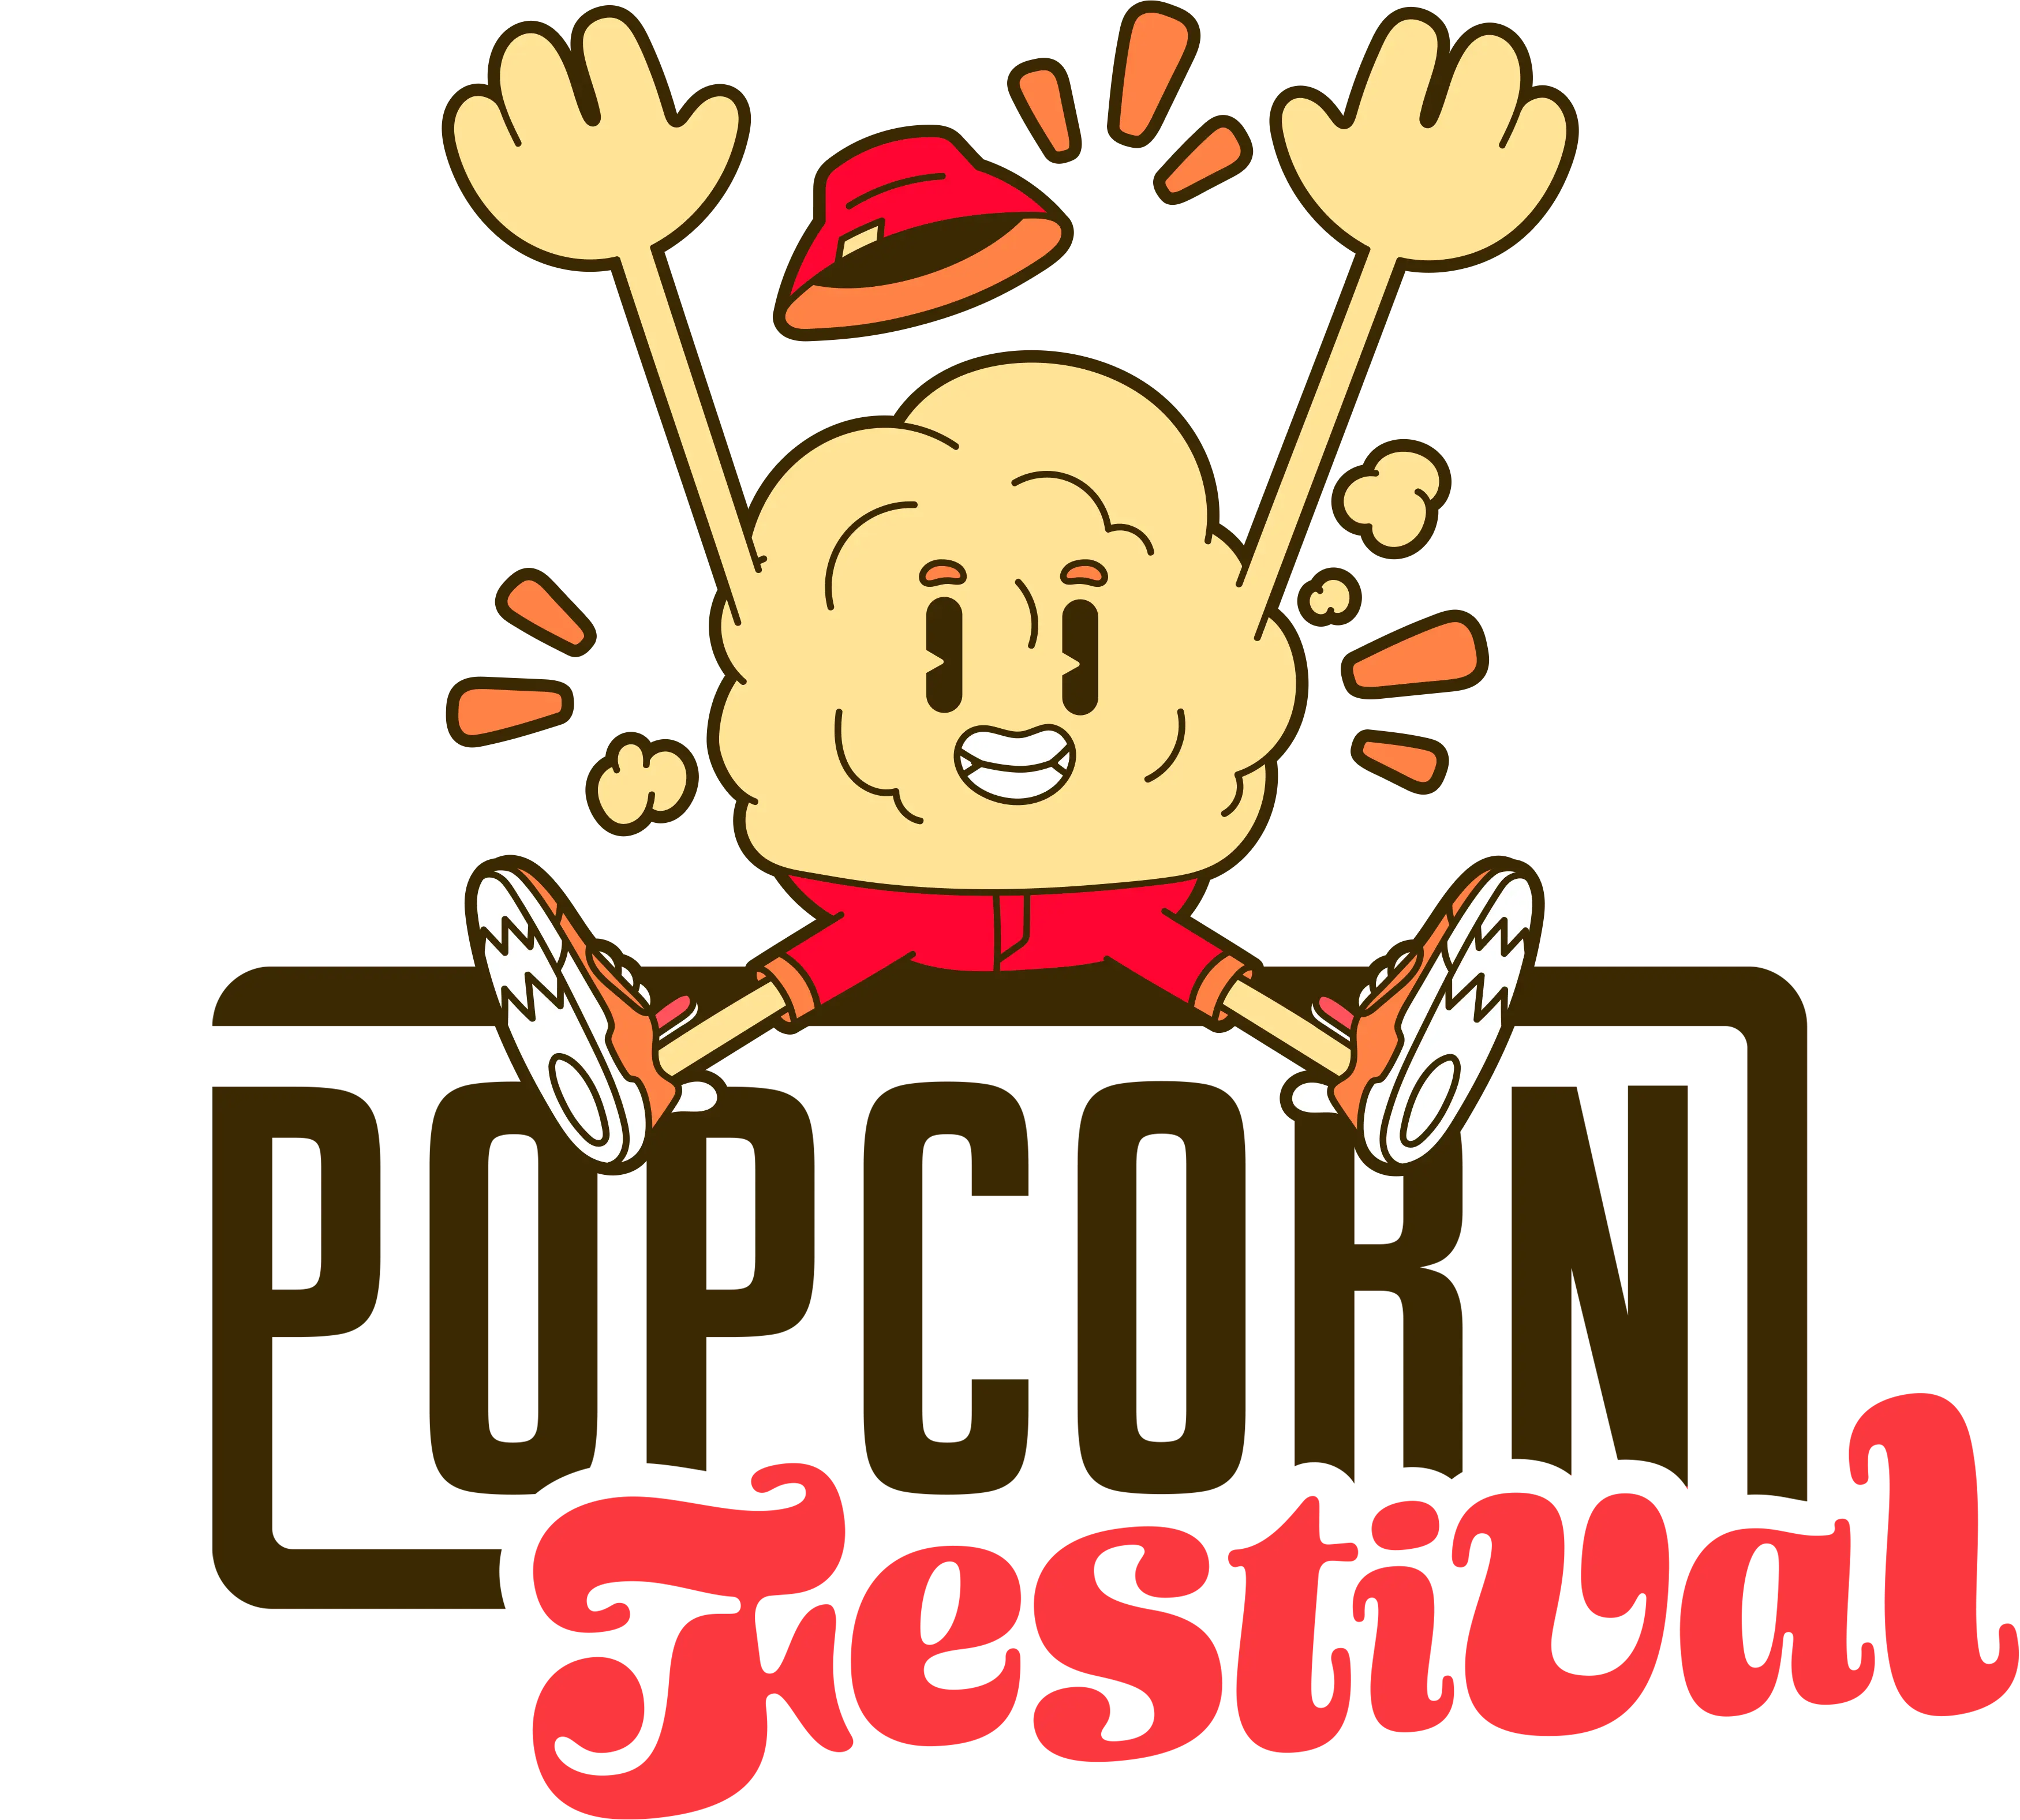 Popcorn festival logo